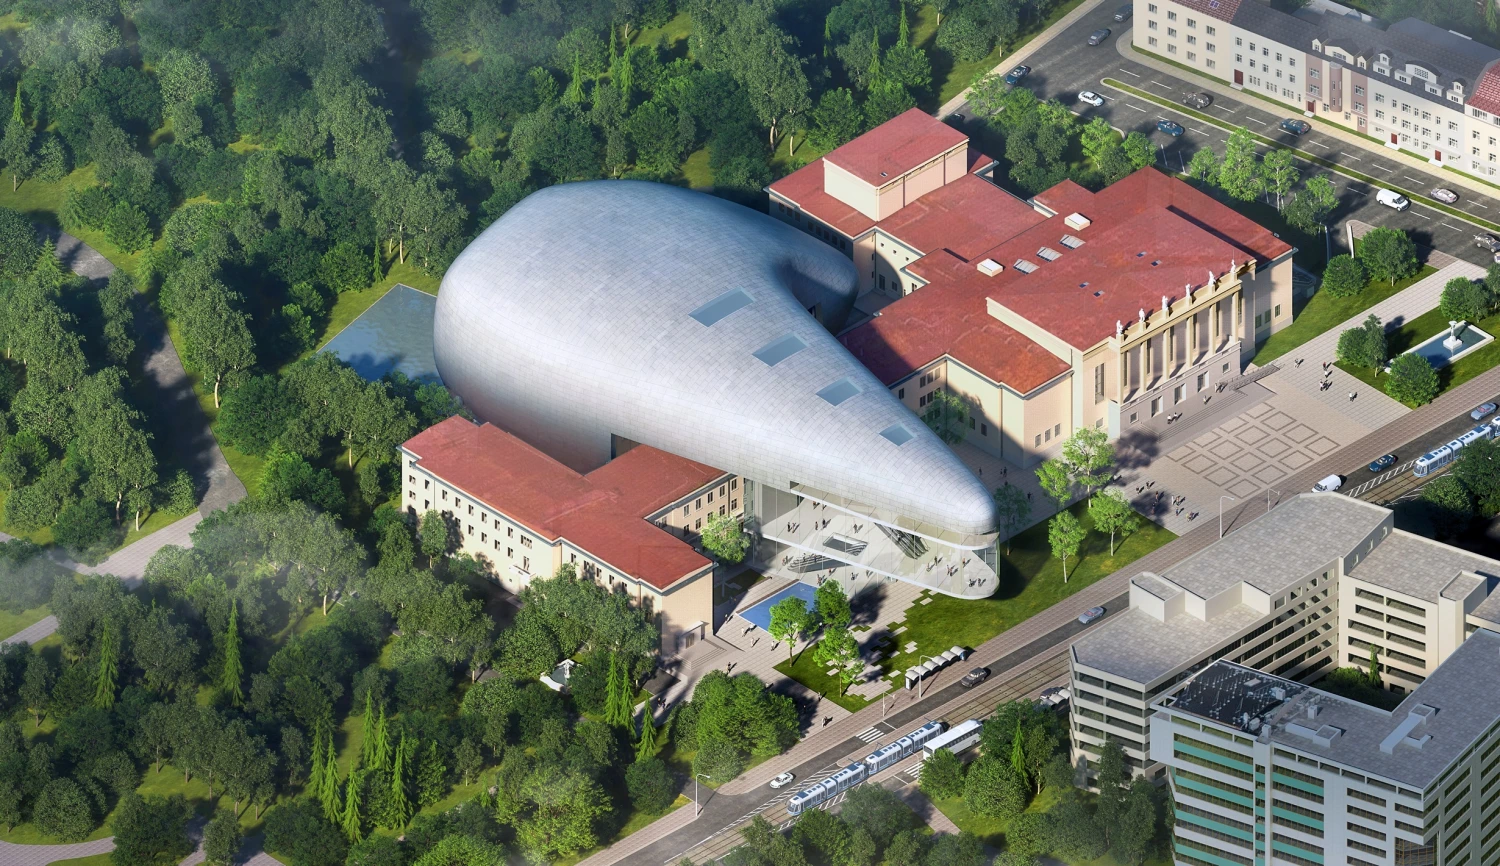 Dřív než Praha. Ostrava začala stavět koncertní sál a chystá se na mrakodrapy